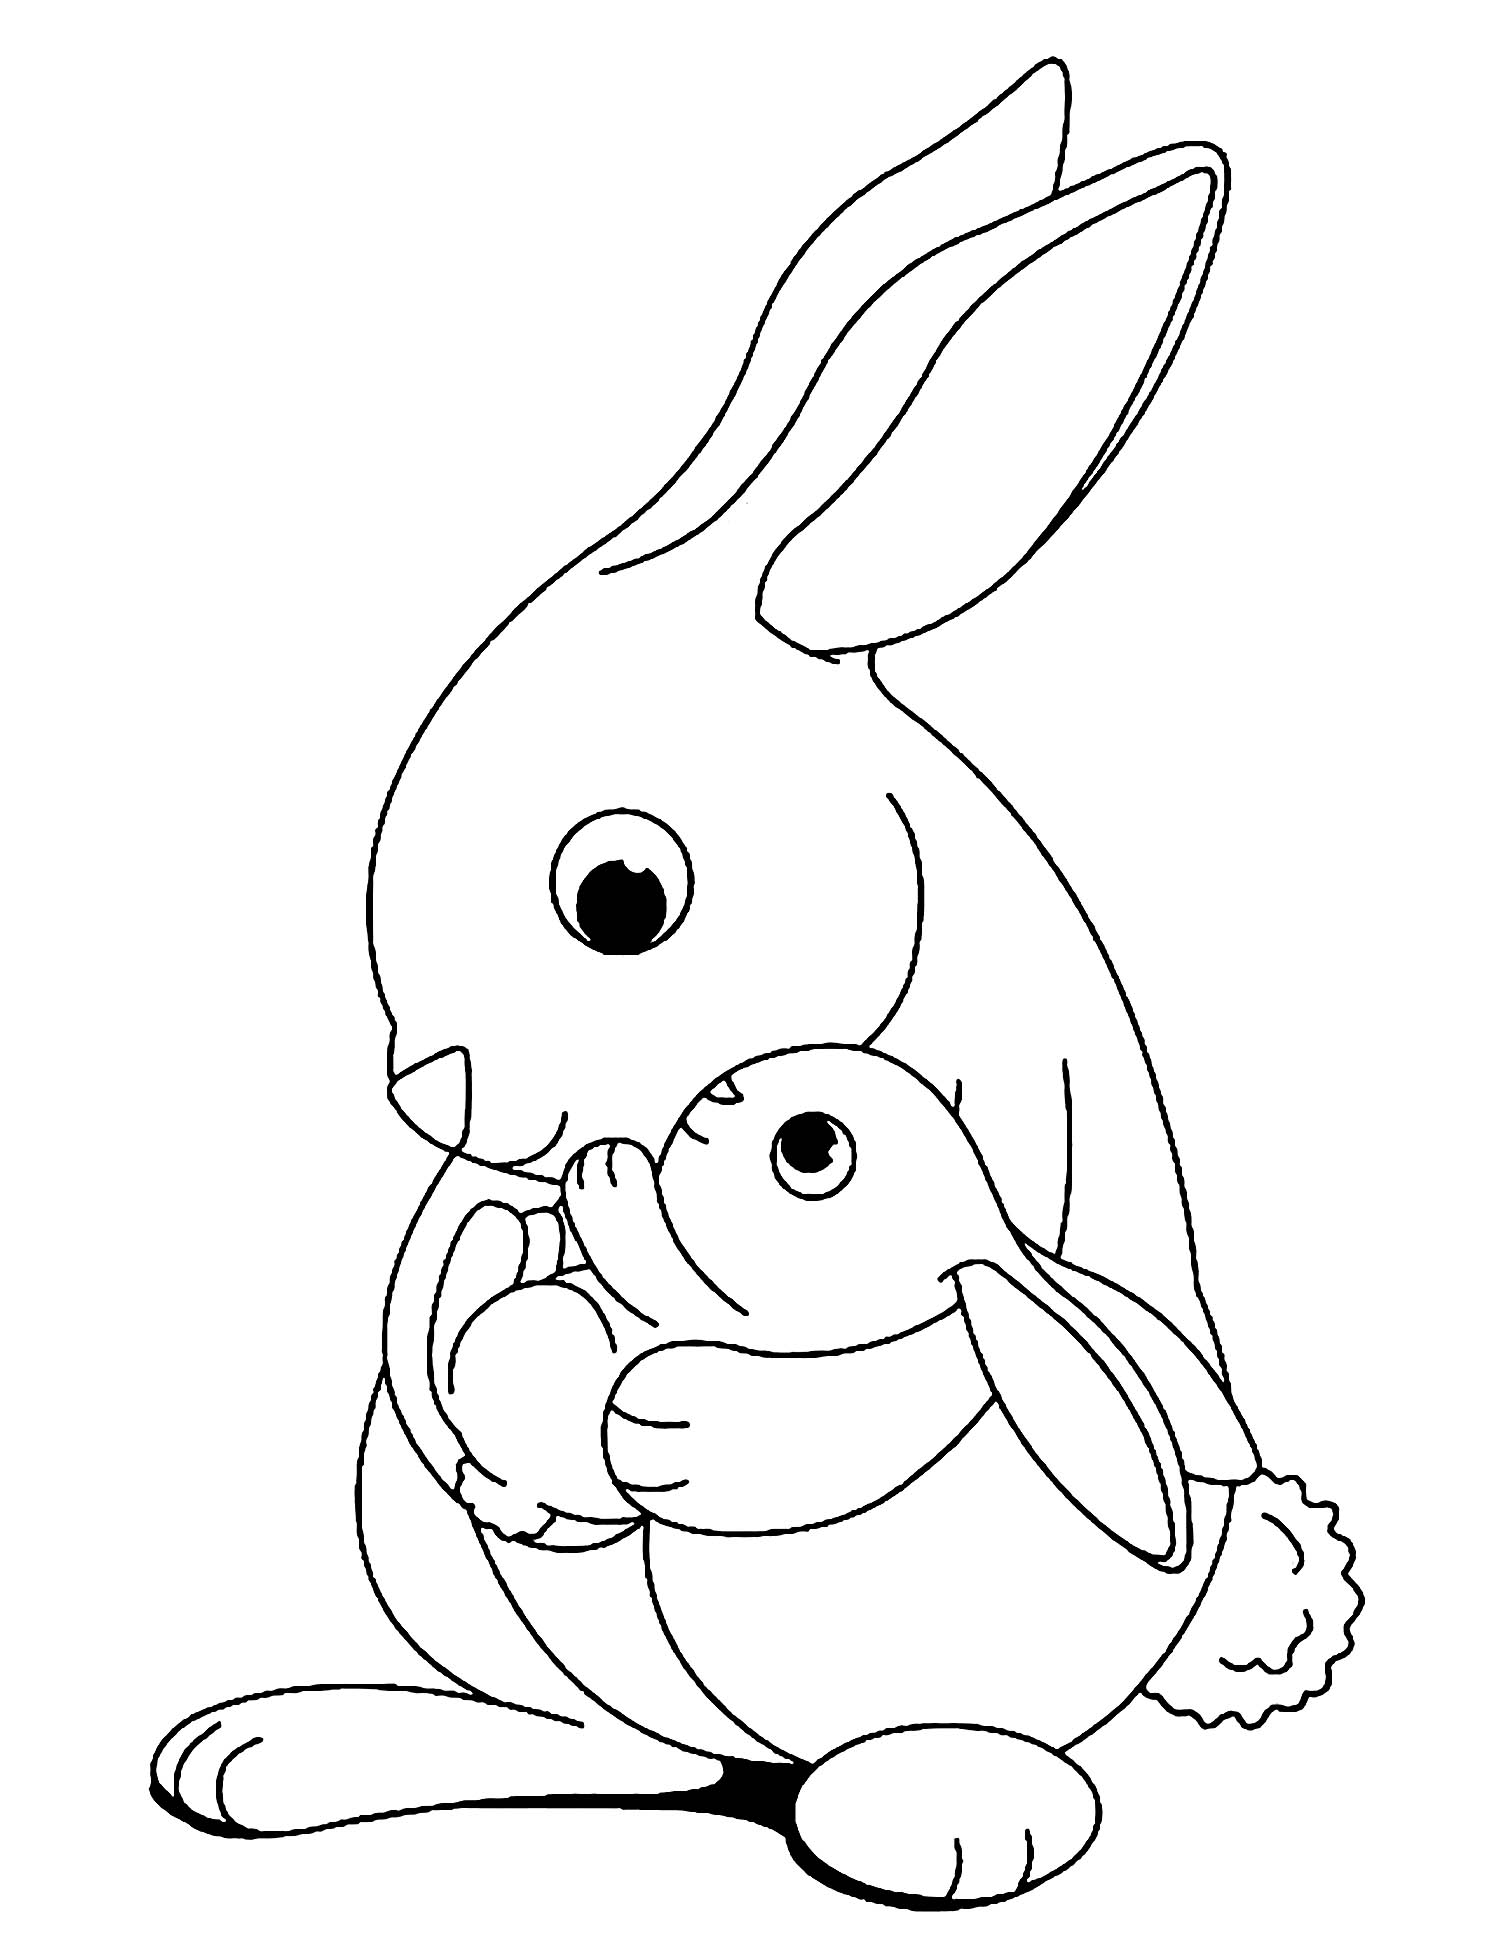 Tranh tô màu thỏ mẹ và thỏ con